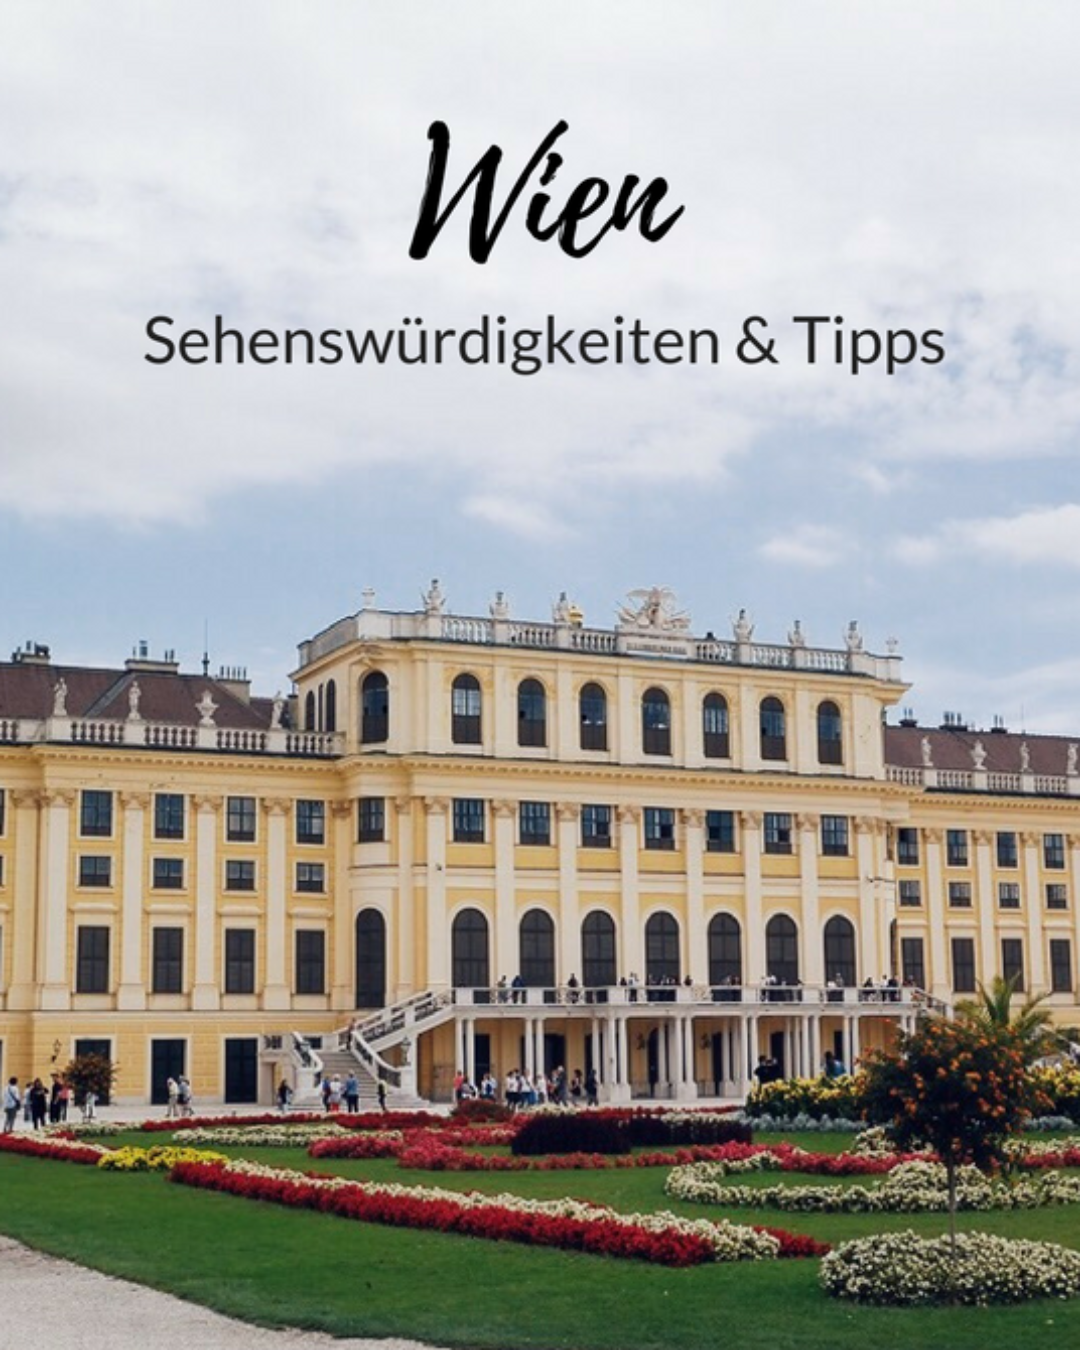 Kurztrip nach Wien: TOP Sehenswürdigkeiten, Hotel Zeitgeist & weitere Geheimtipps